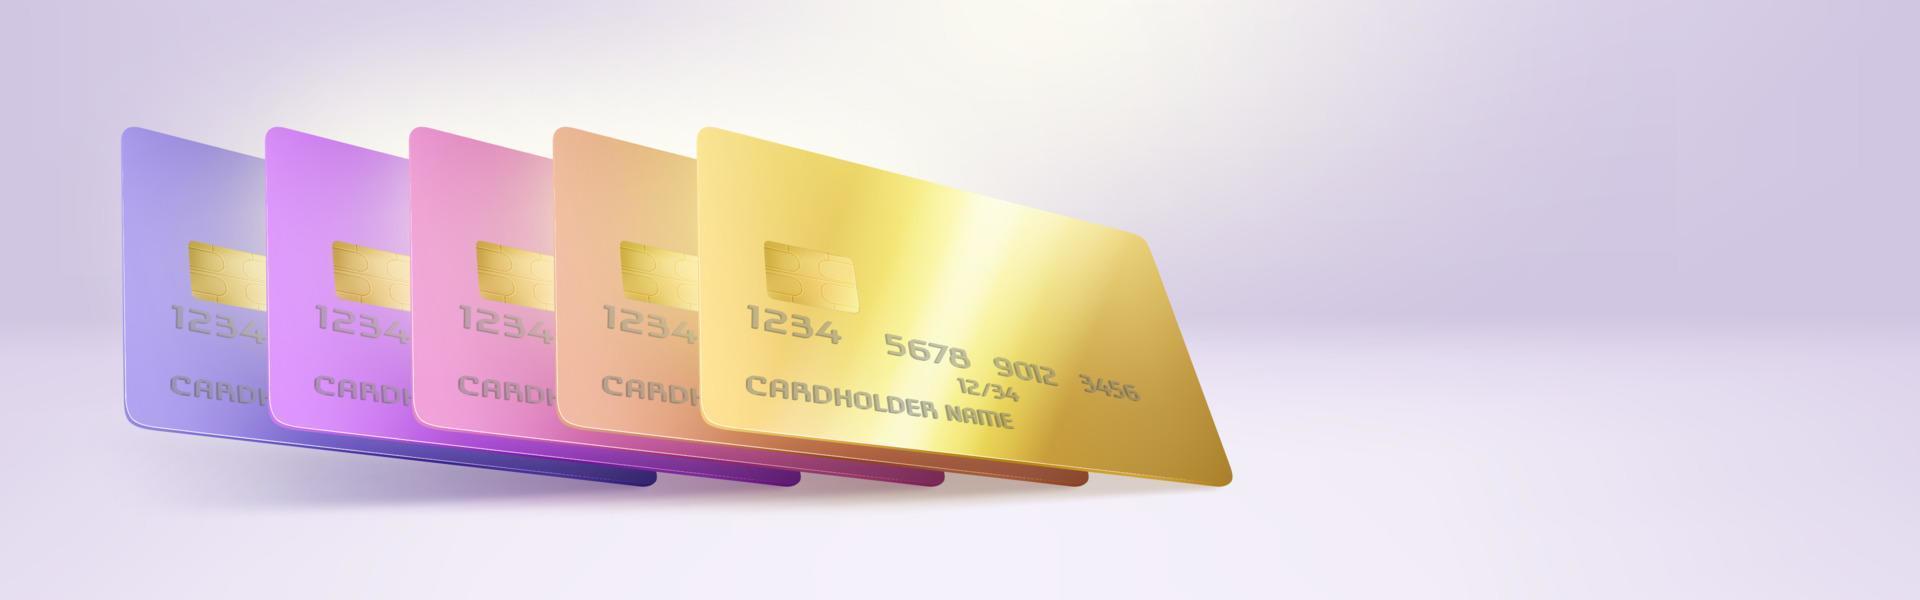 plantilla de banner de finanzas con tarjetas de crédito de plástico vector